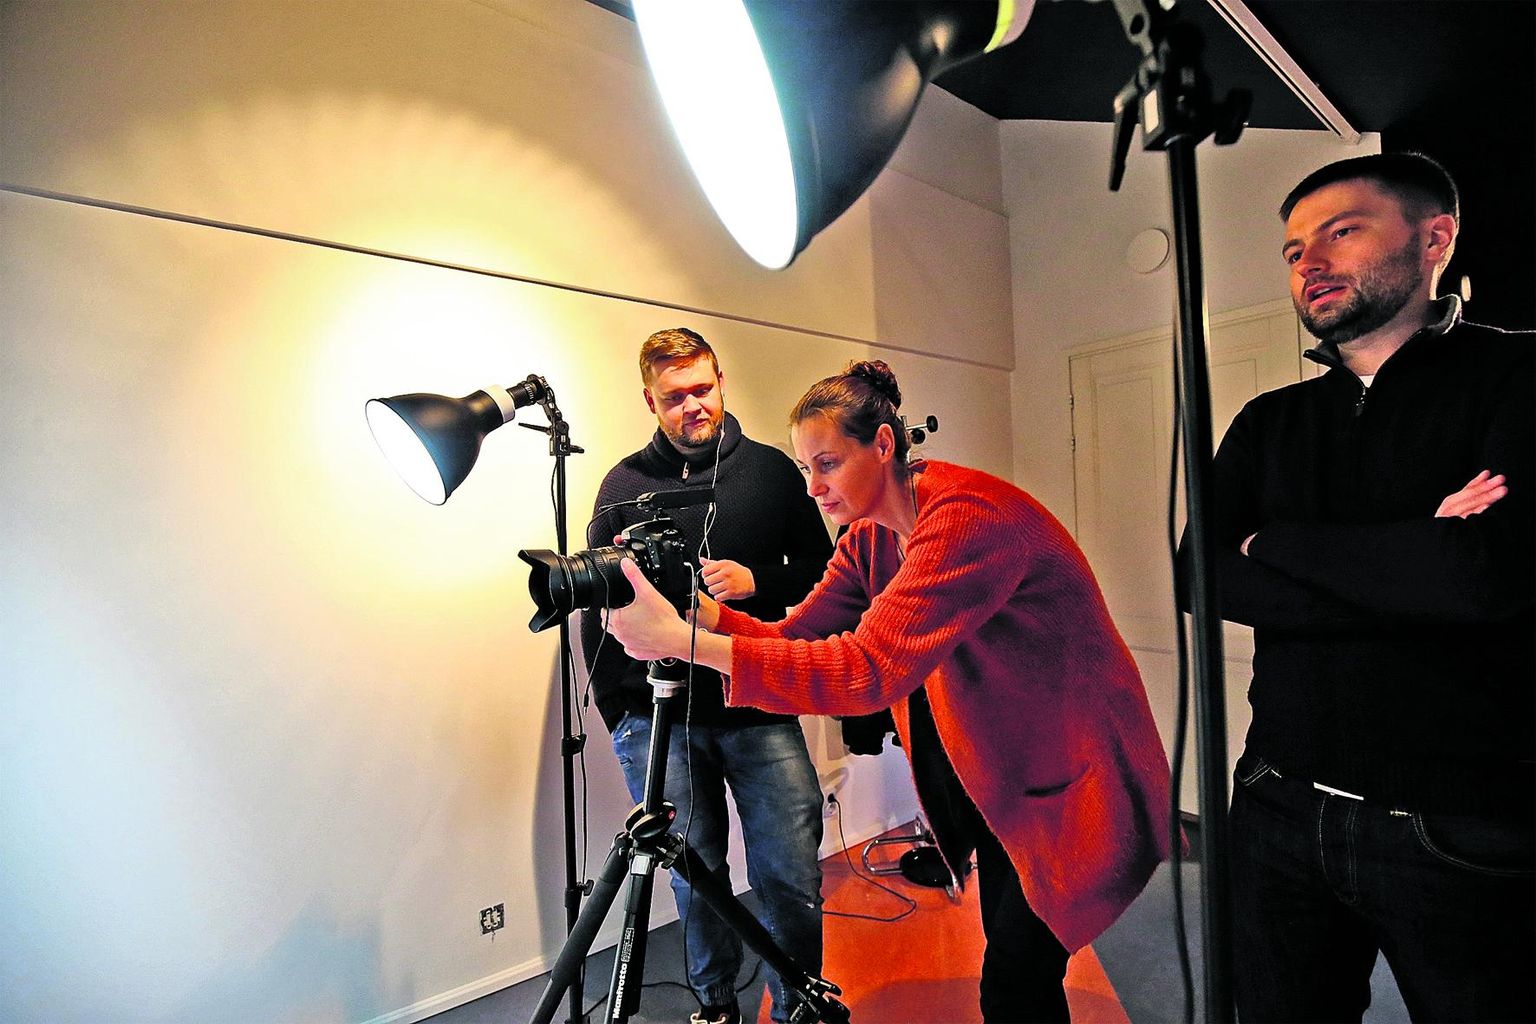 Nolani mõju! Rahvusvaheliselt tuntud artist otsib muusikavideosse näitlejaid Eestist. Pilt on illustratiivne.